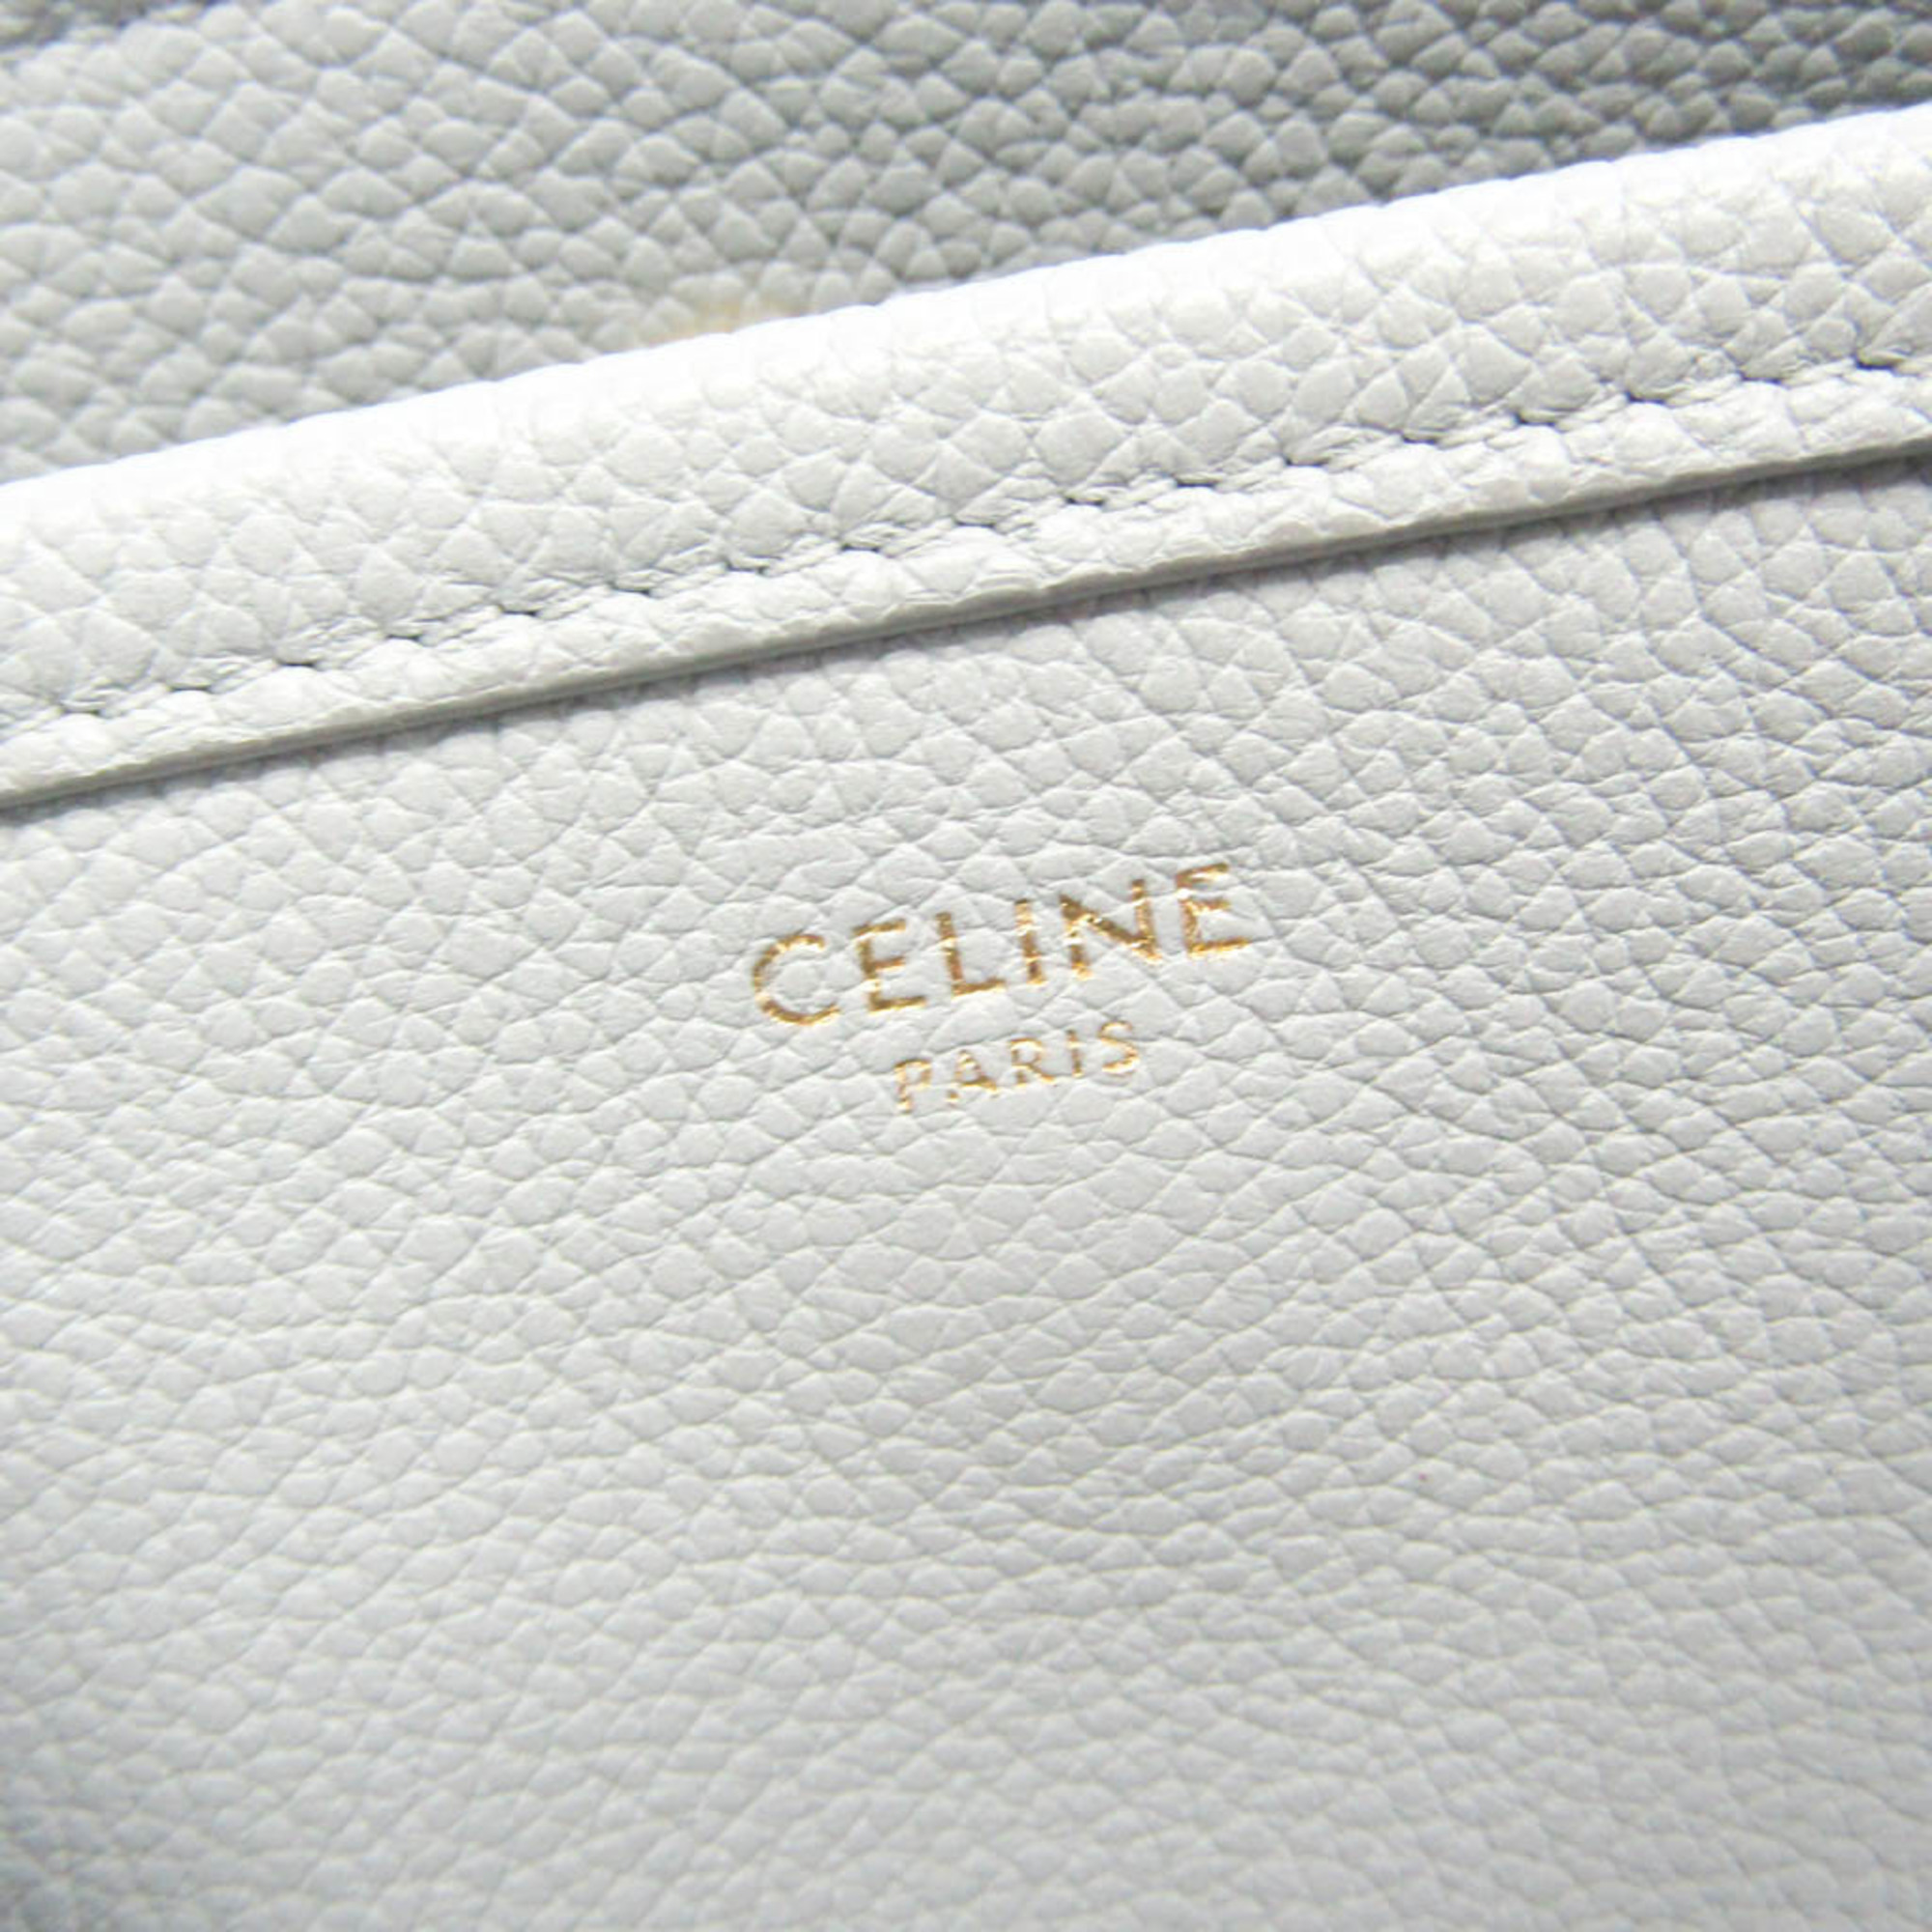 Celine Men,Women Leather Handbag,Shoulder Bag Light Blue Gray